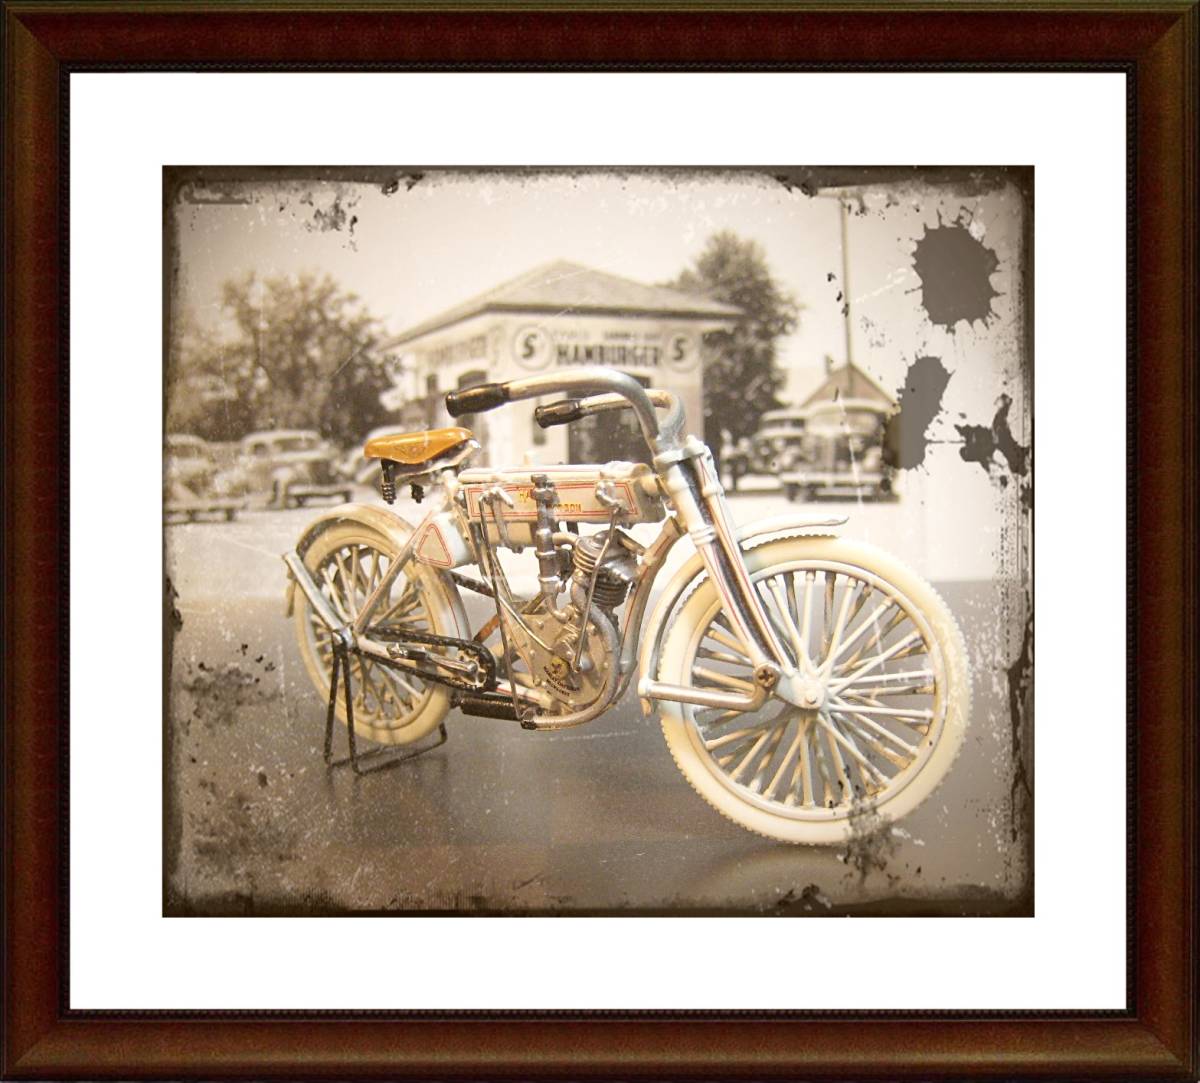 FRANKLIN MINT フランクリンミント 1/24 Harley クラシック レトロ 懐古 昔 ハーレー 第1号 初号機 1907 原動機付自転車 バイク オートバイ_画像8